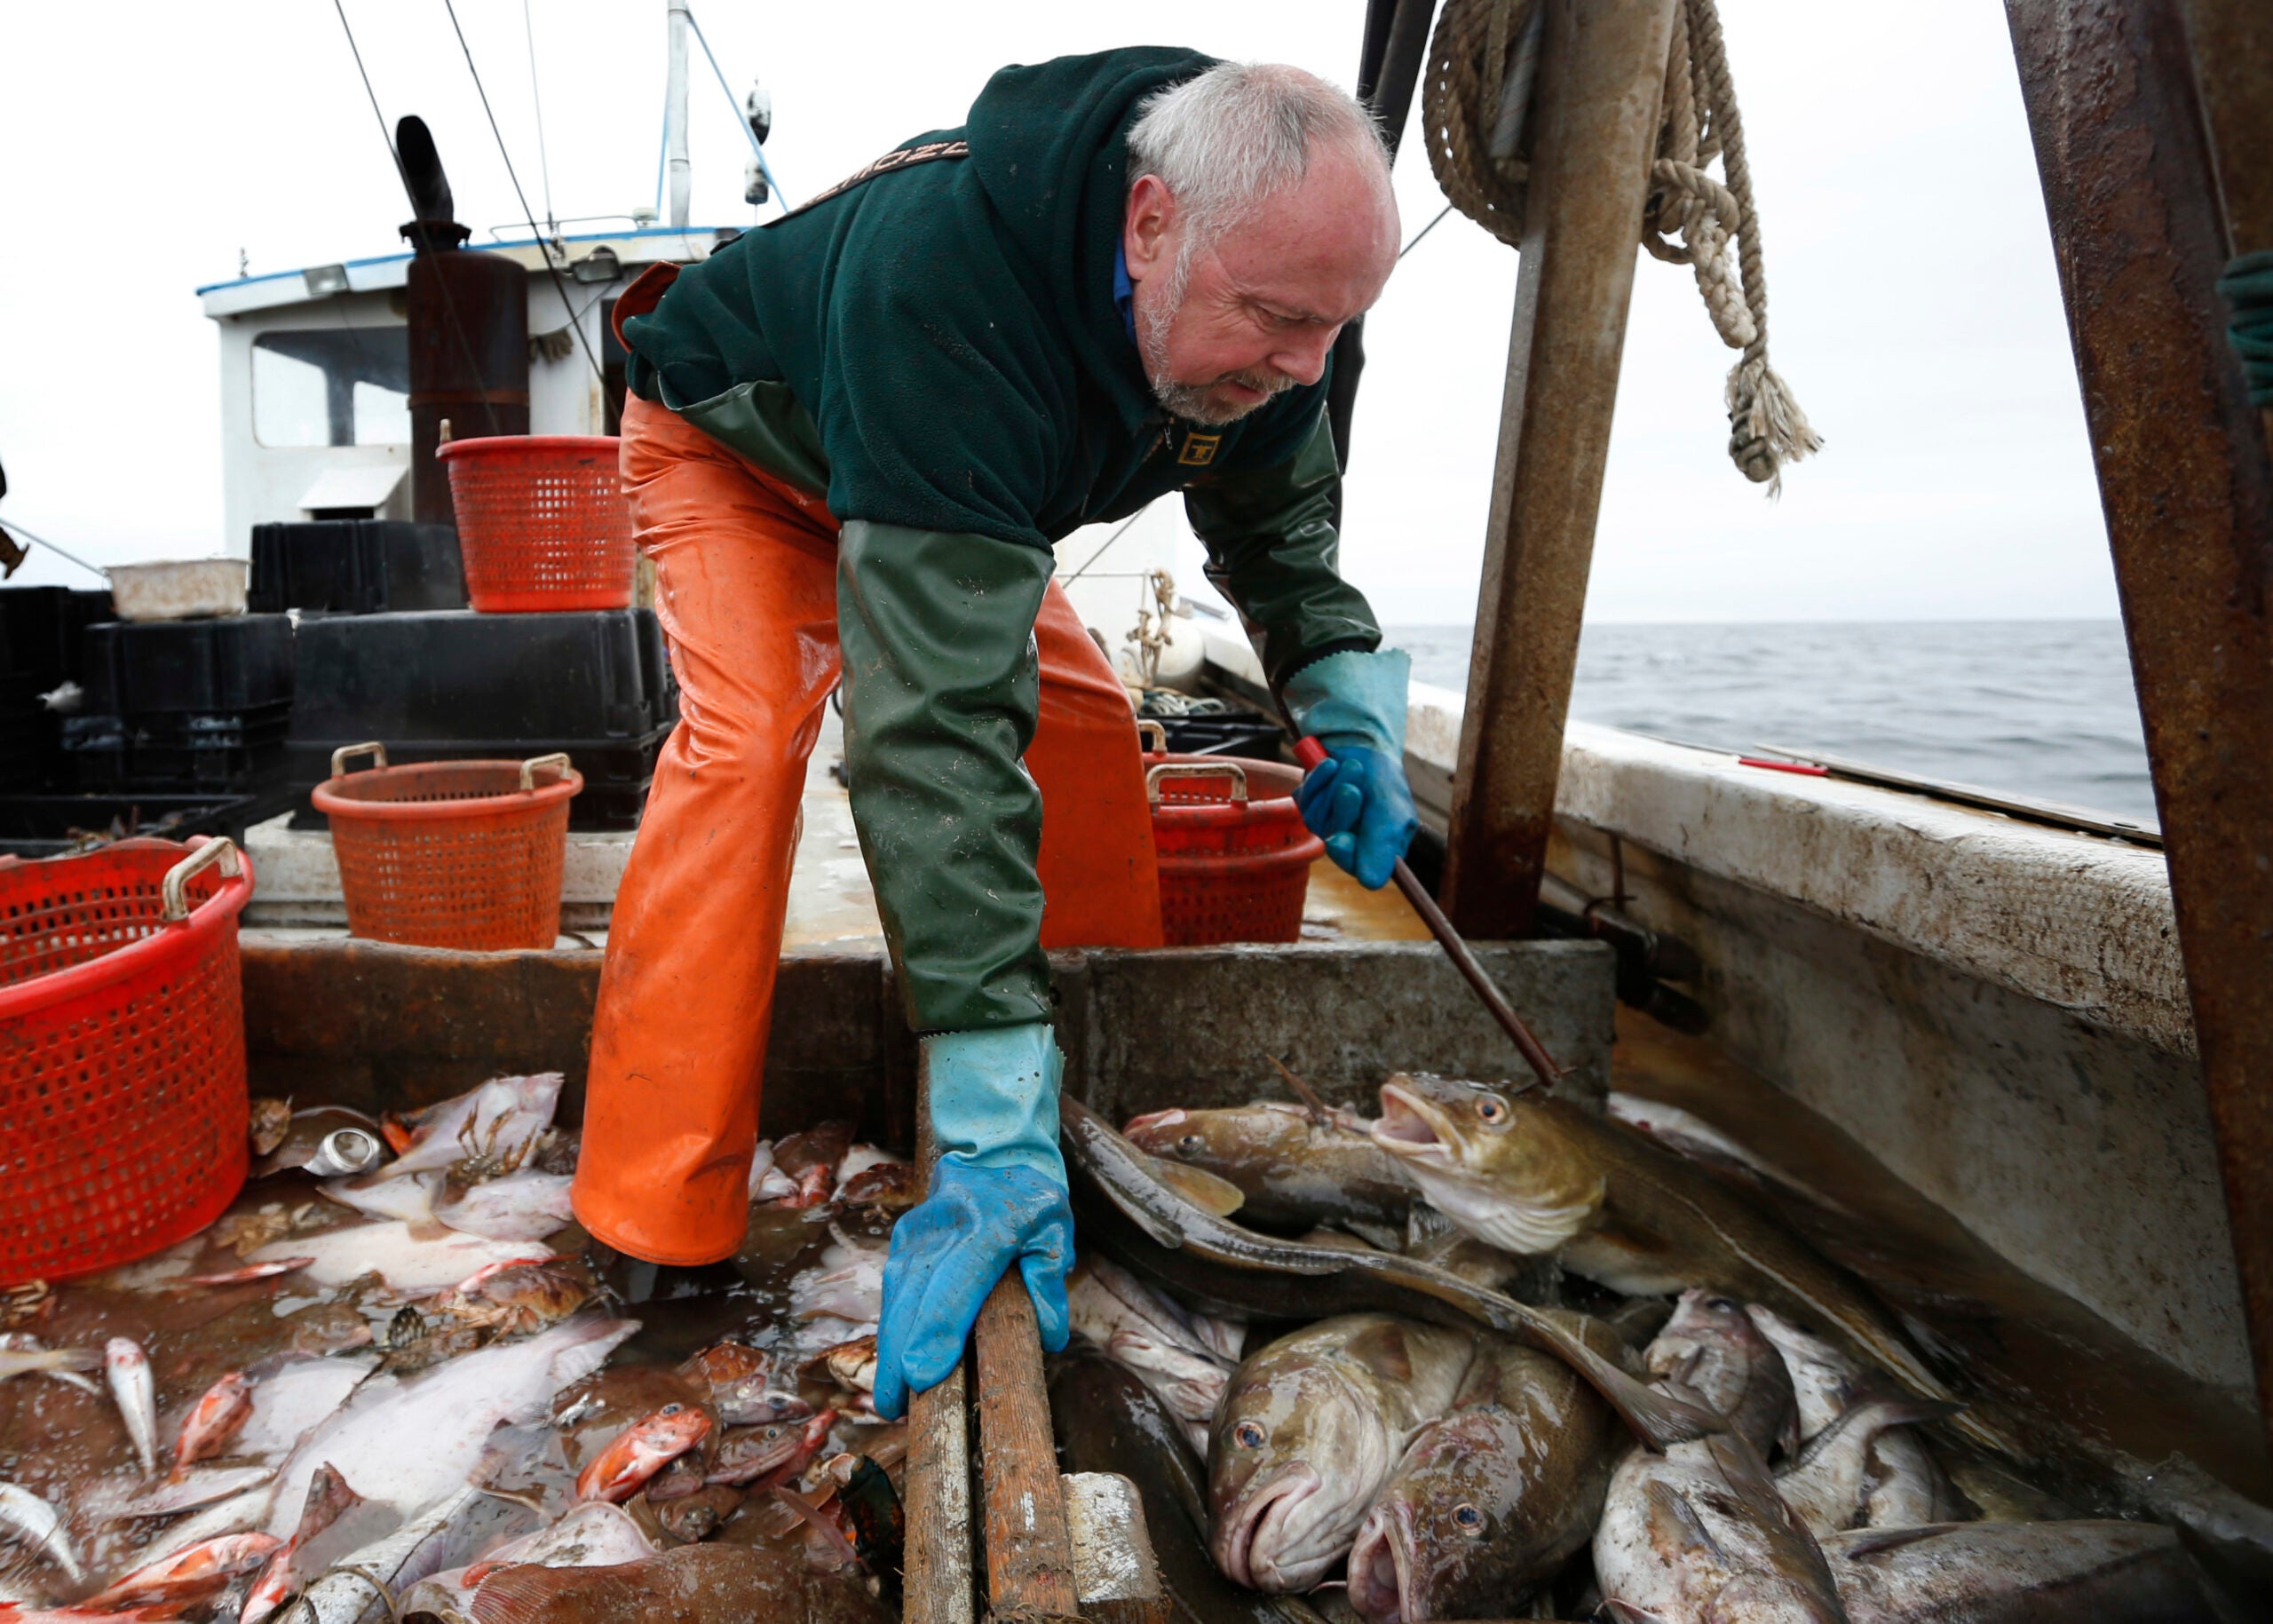 Fisherman David Goethel sorts cod and haddock while fishing off the coast of New Hampshire.